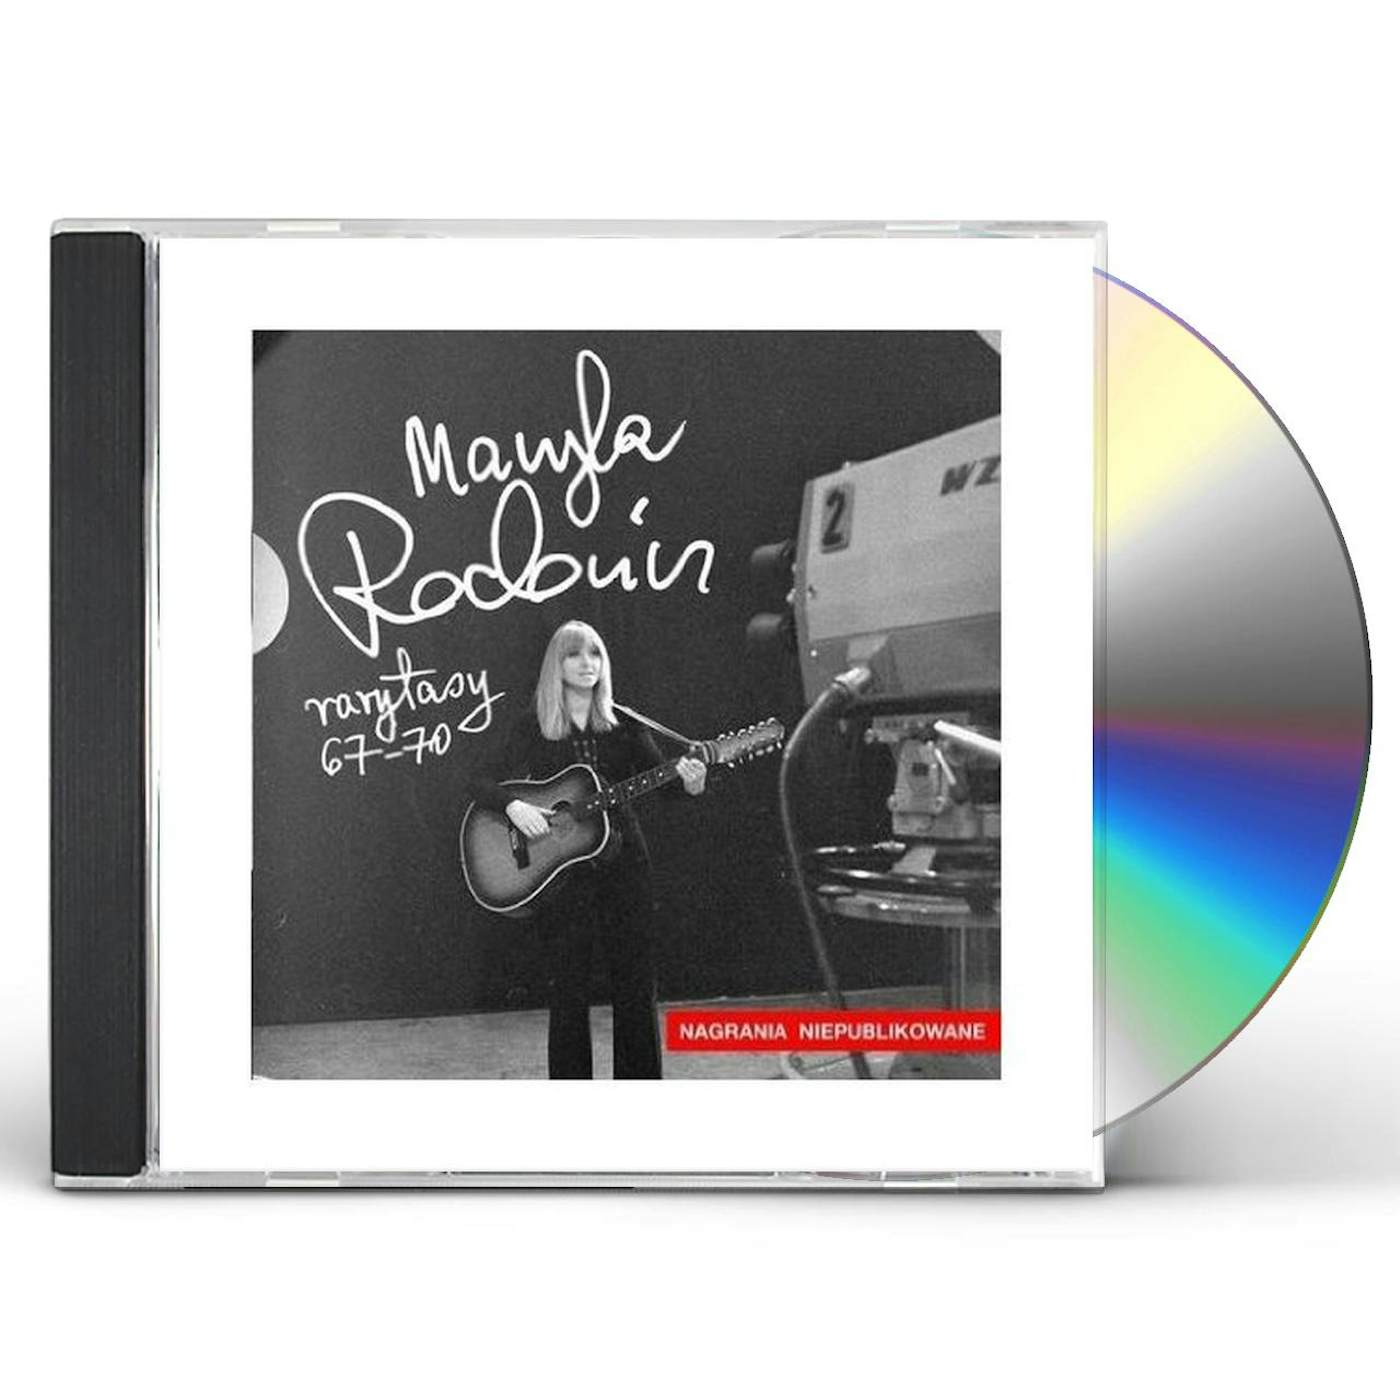 Maryla Rodowicz RARYTASY 1: 1967 - 1970 CD